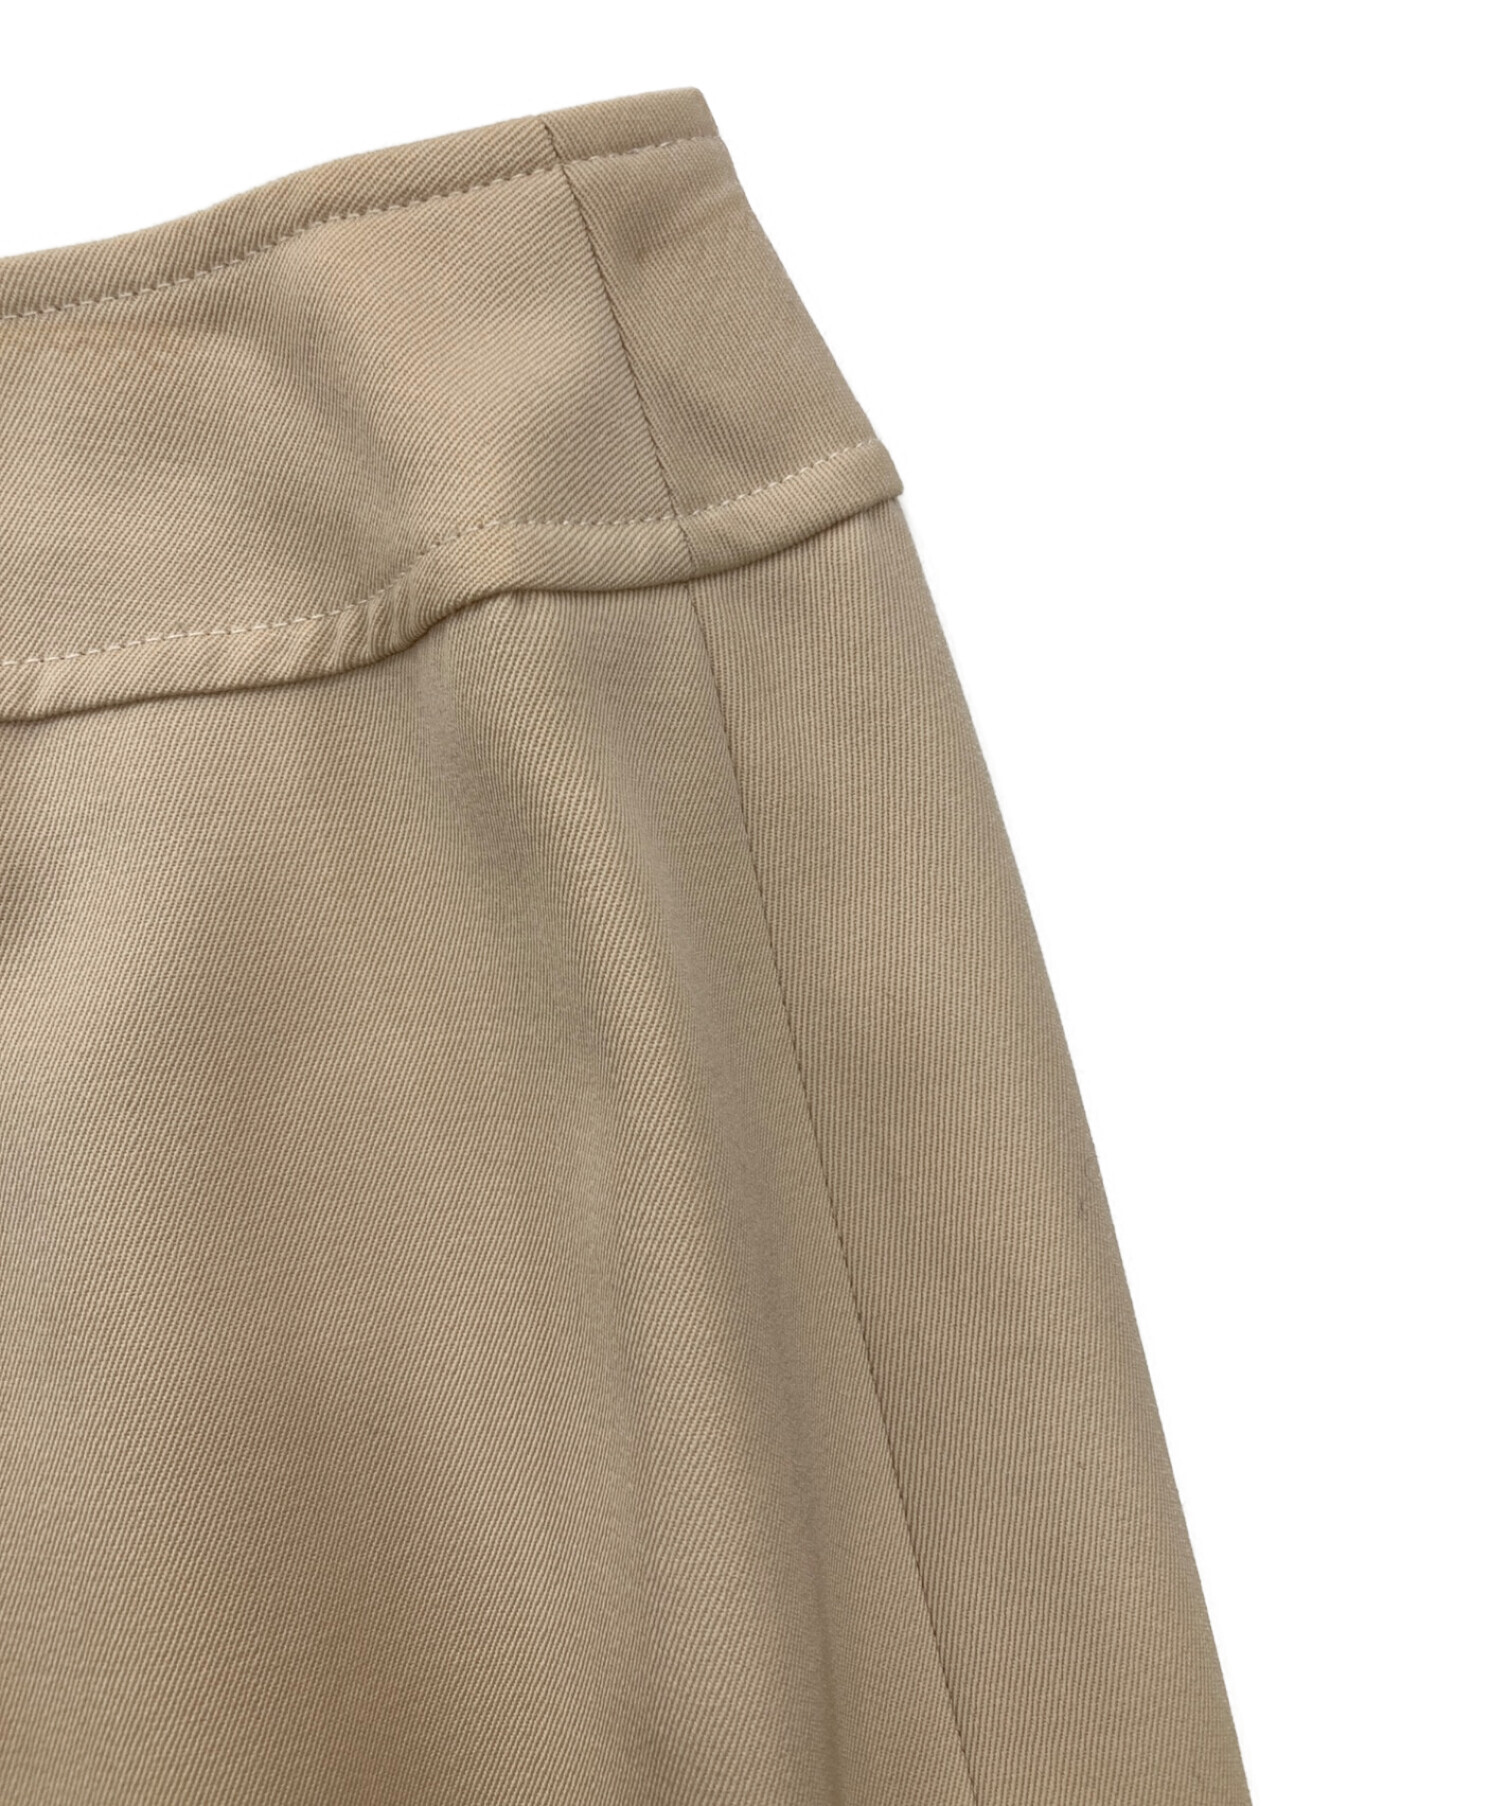 CHANEL巻きスカート 34 size - ひざ丈スカート